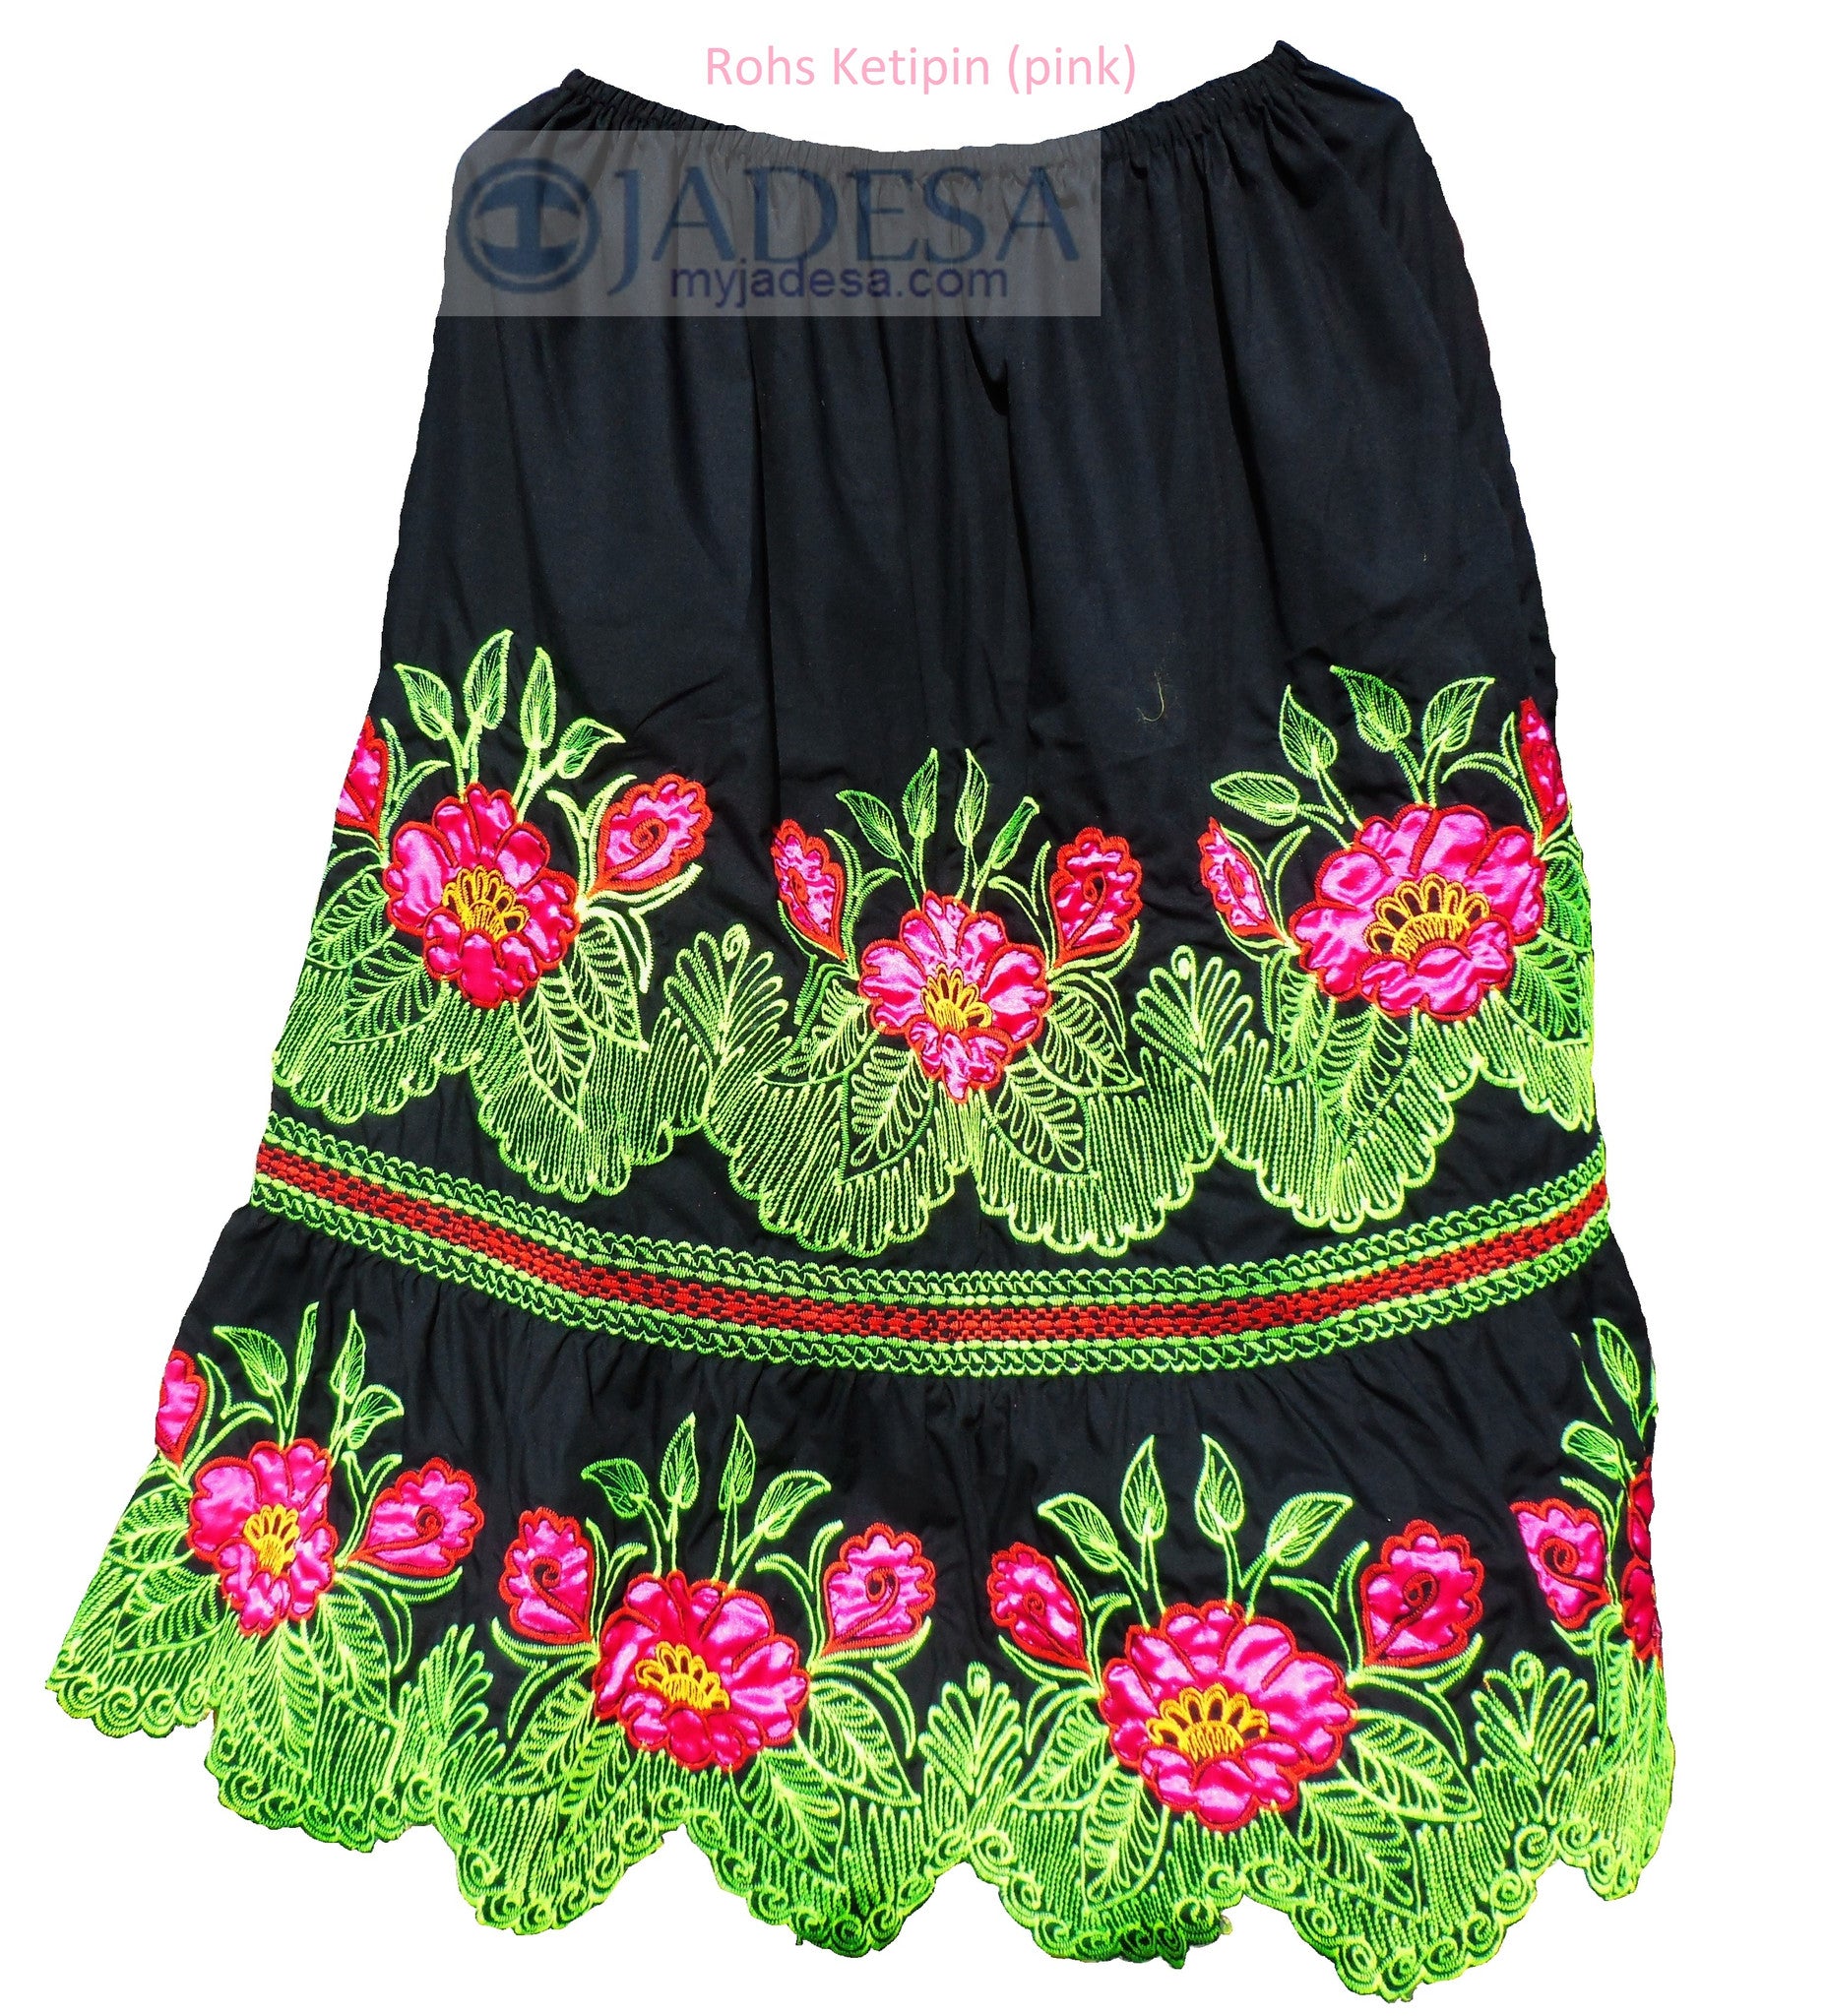 Pohnpei Skirt - other design